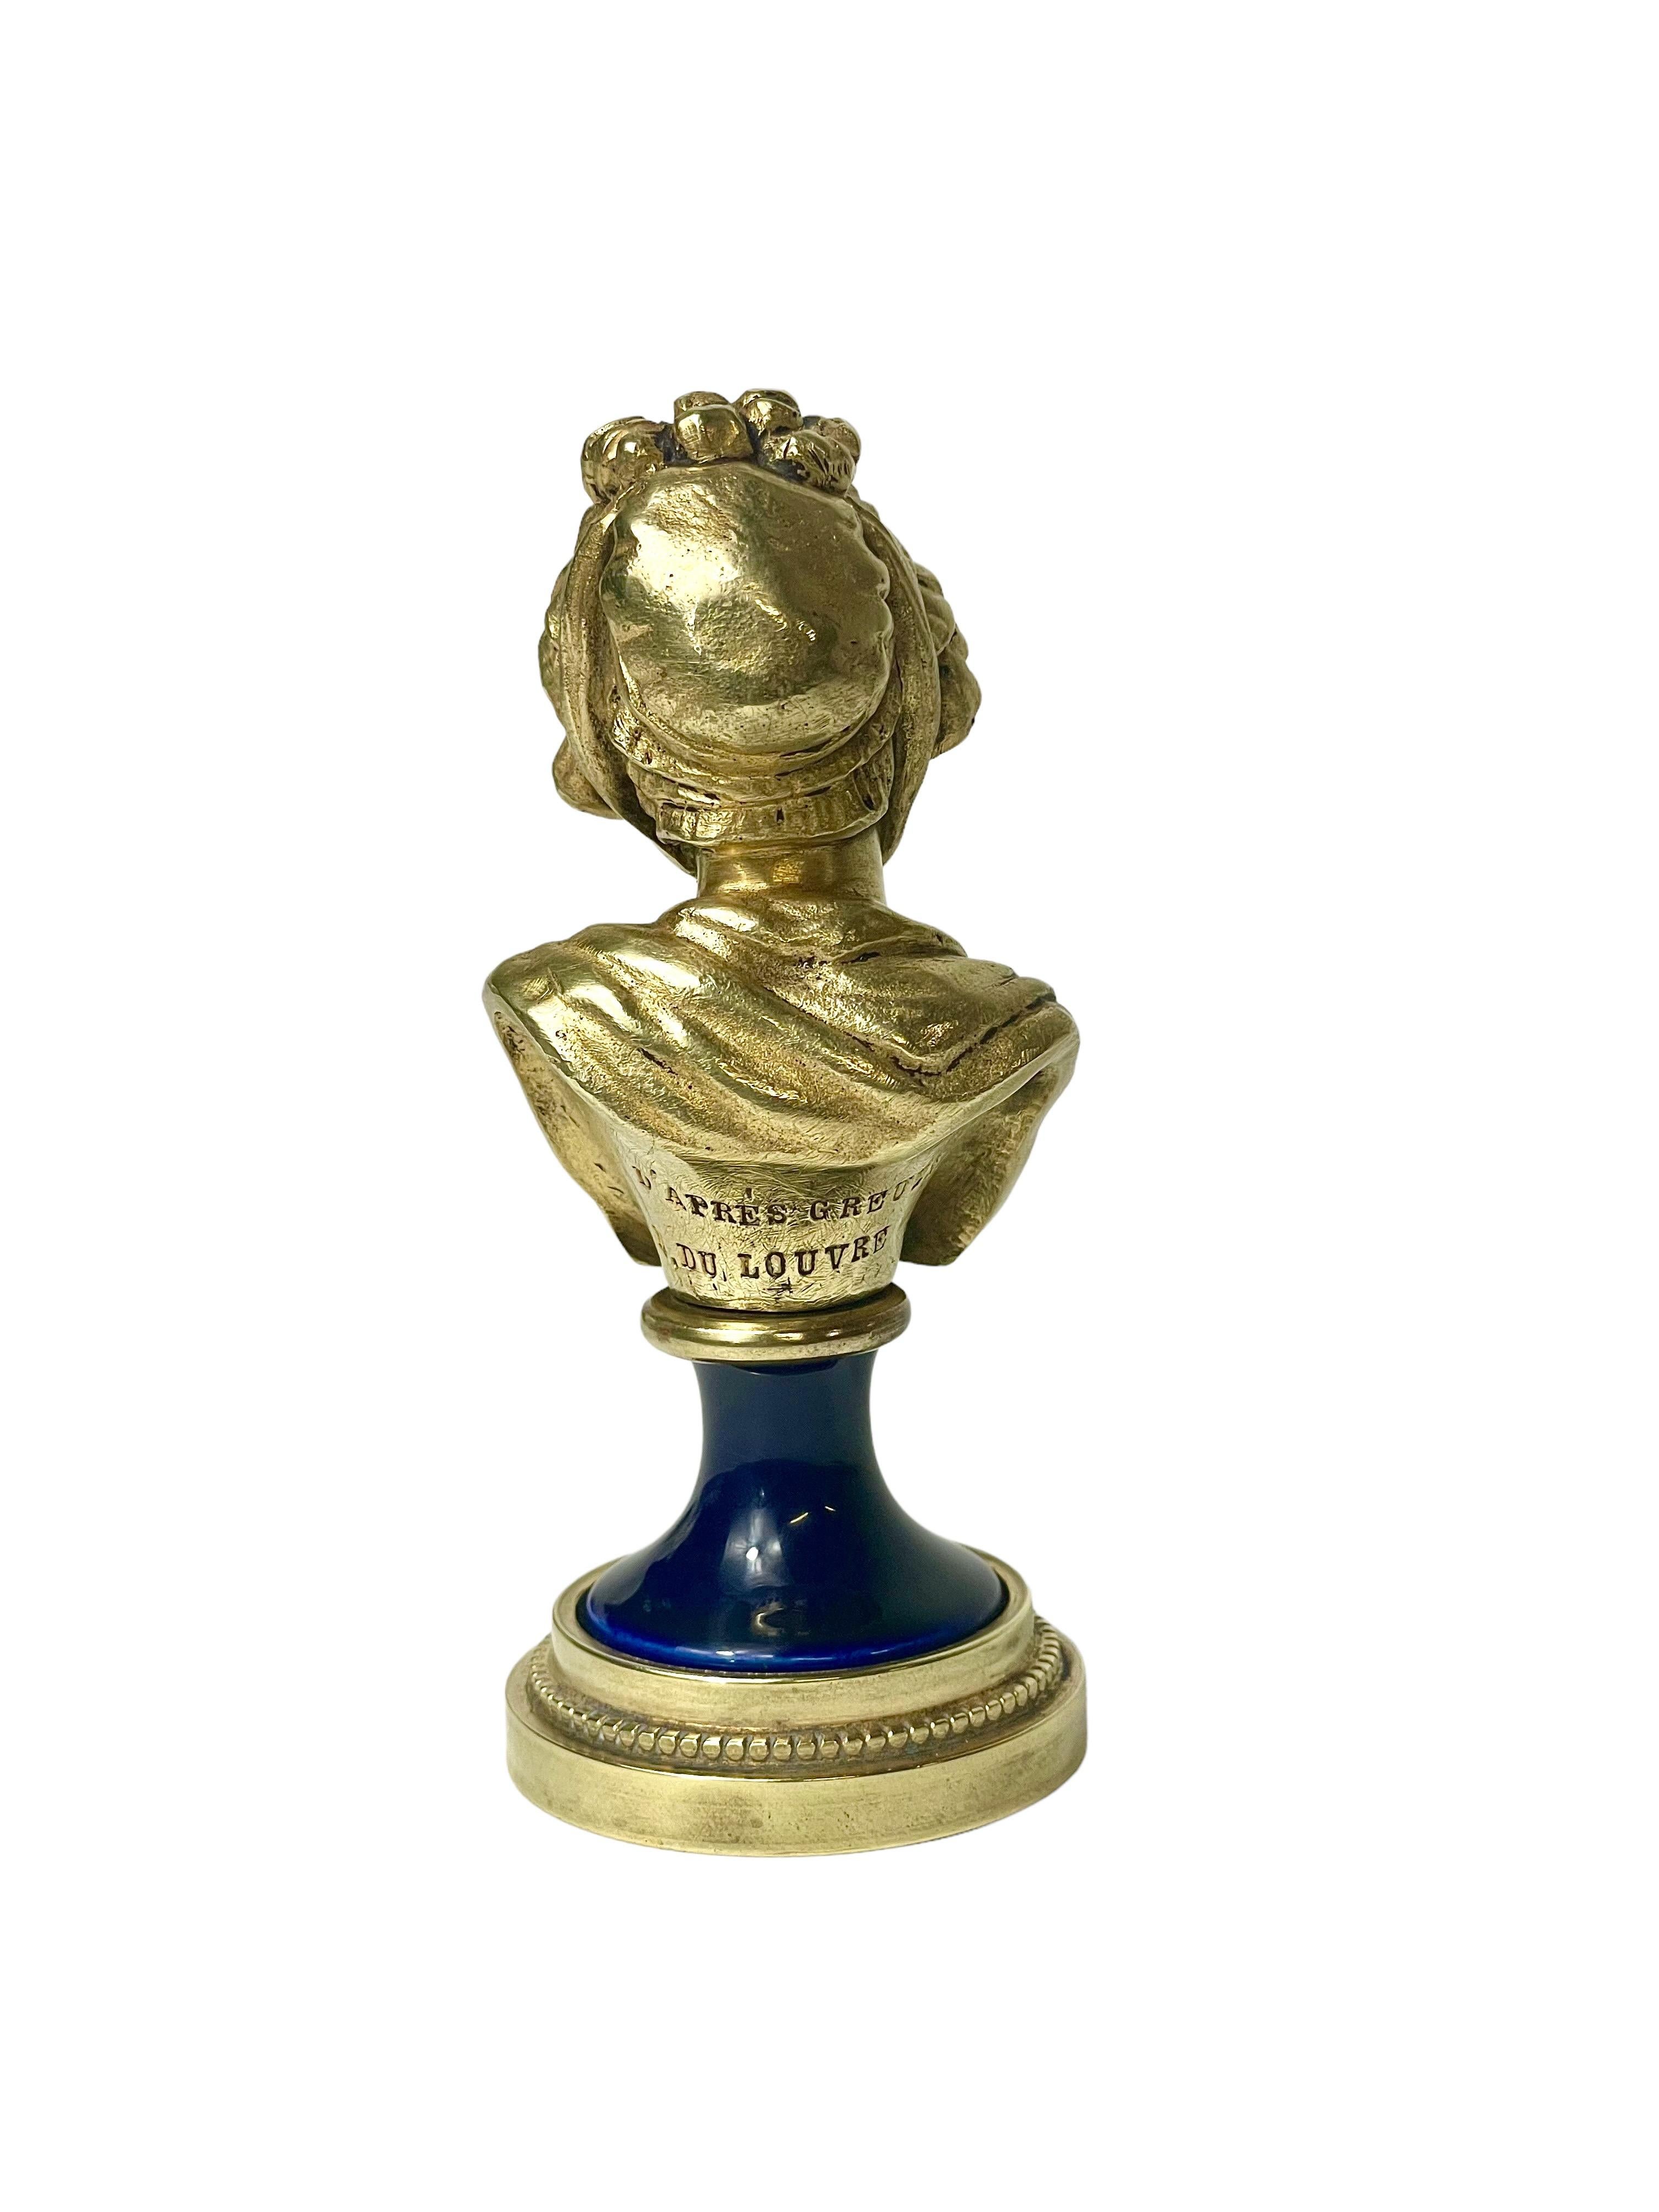 Eine schöne vergoldete Bronzebüste, die eine elegante junge Dame mit modischer Rüschenhaube, fein drapierter Kleidung und heiterer Miene darstellt. Die auf einem tiefblauen Porzellan- und Bronzesockel montierte Statuette im Louis-XVI-Stil (um 1900)